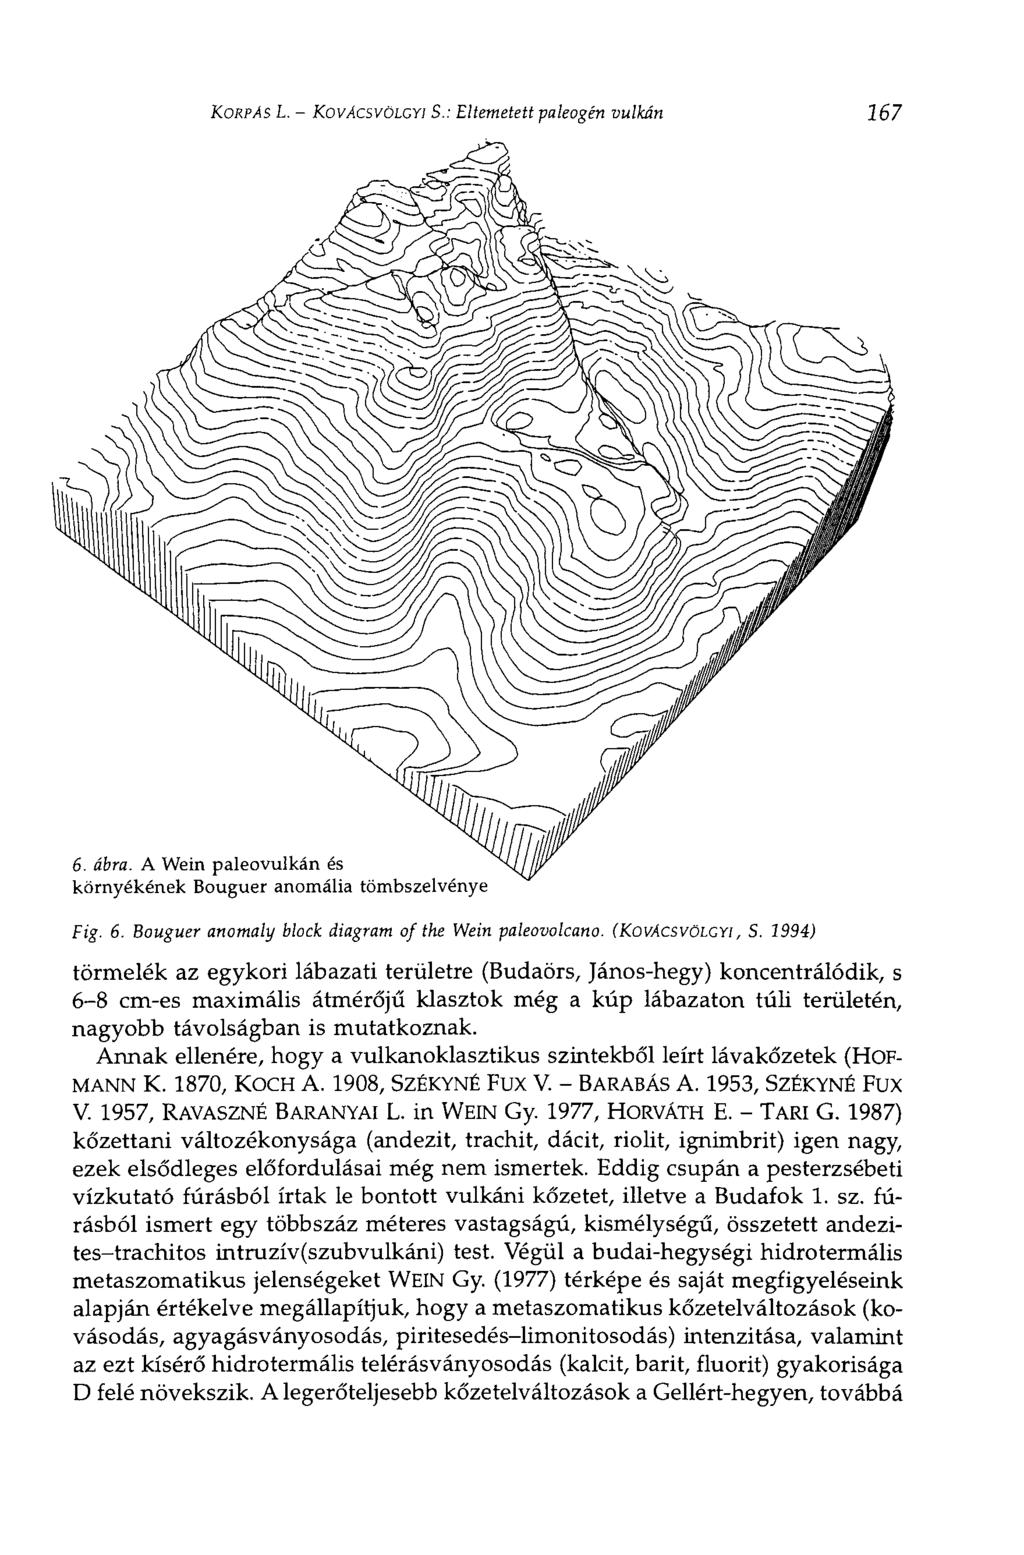 KORPÁS L. KOVÁCSVÖLCYI S.: Eltemetett paleogén vulkán 167 6. ábra. A Wein paleovulkán és környékének Bouguer anomália tömbszelvénye Fig. 6. Bouguer anomaly block diagram of the Wein paleovolcano.